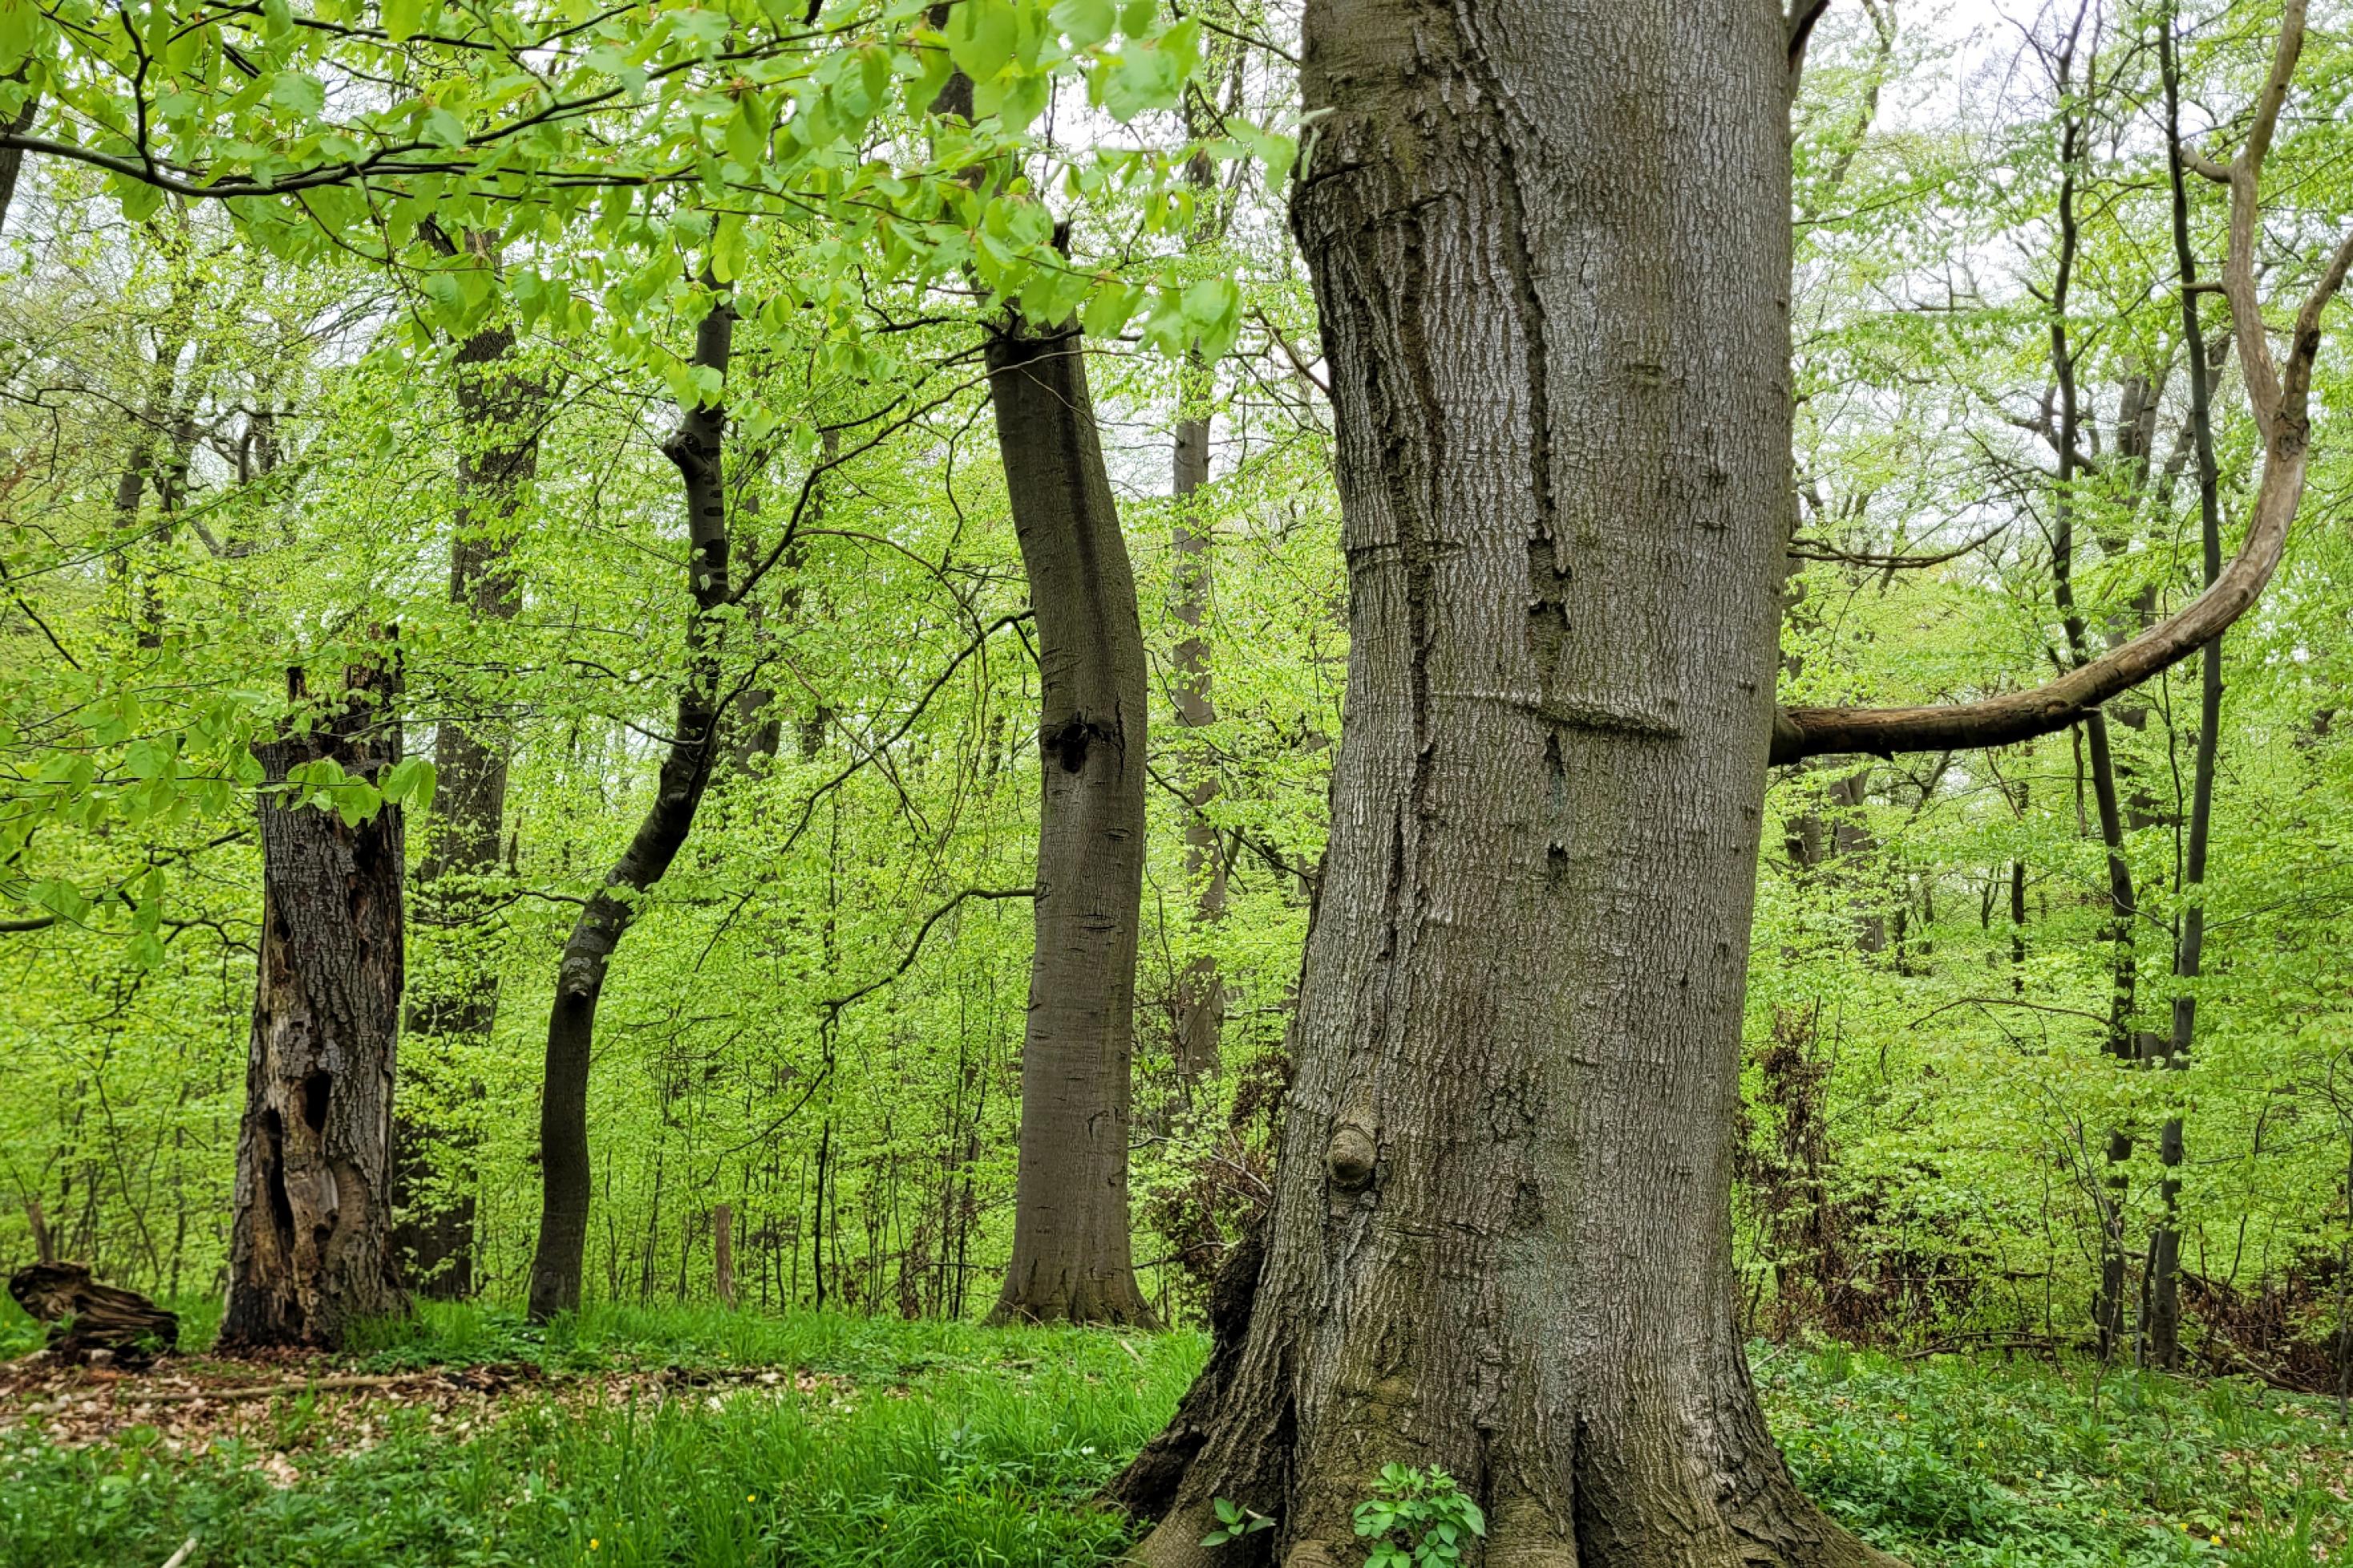 Uralte Eichen stehen locker im grünen Wald